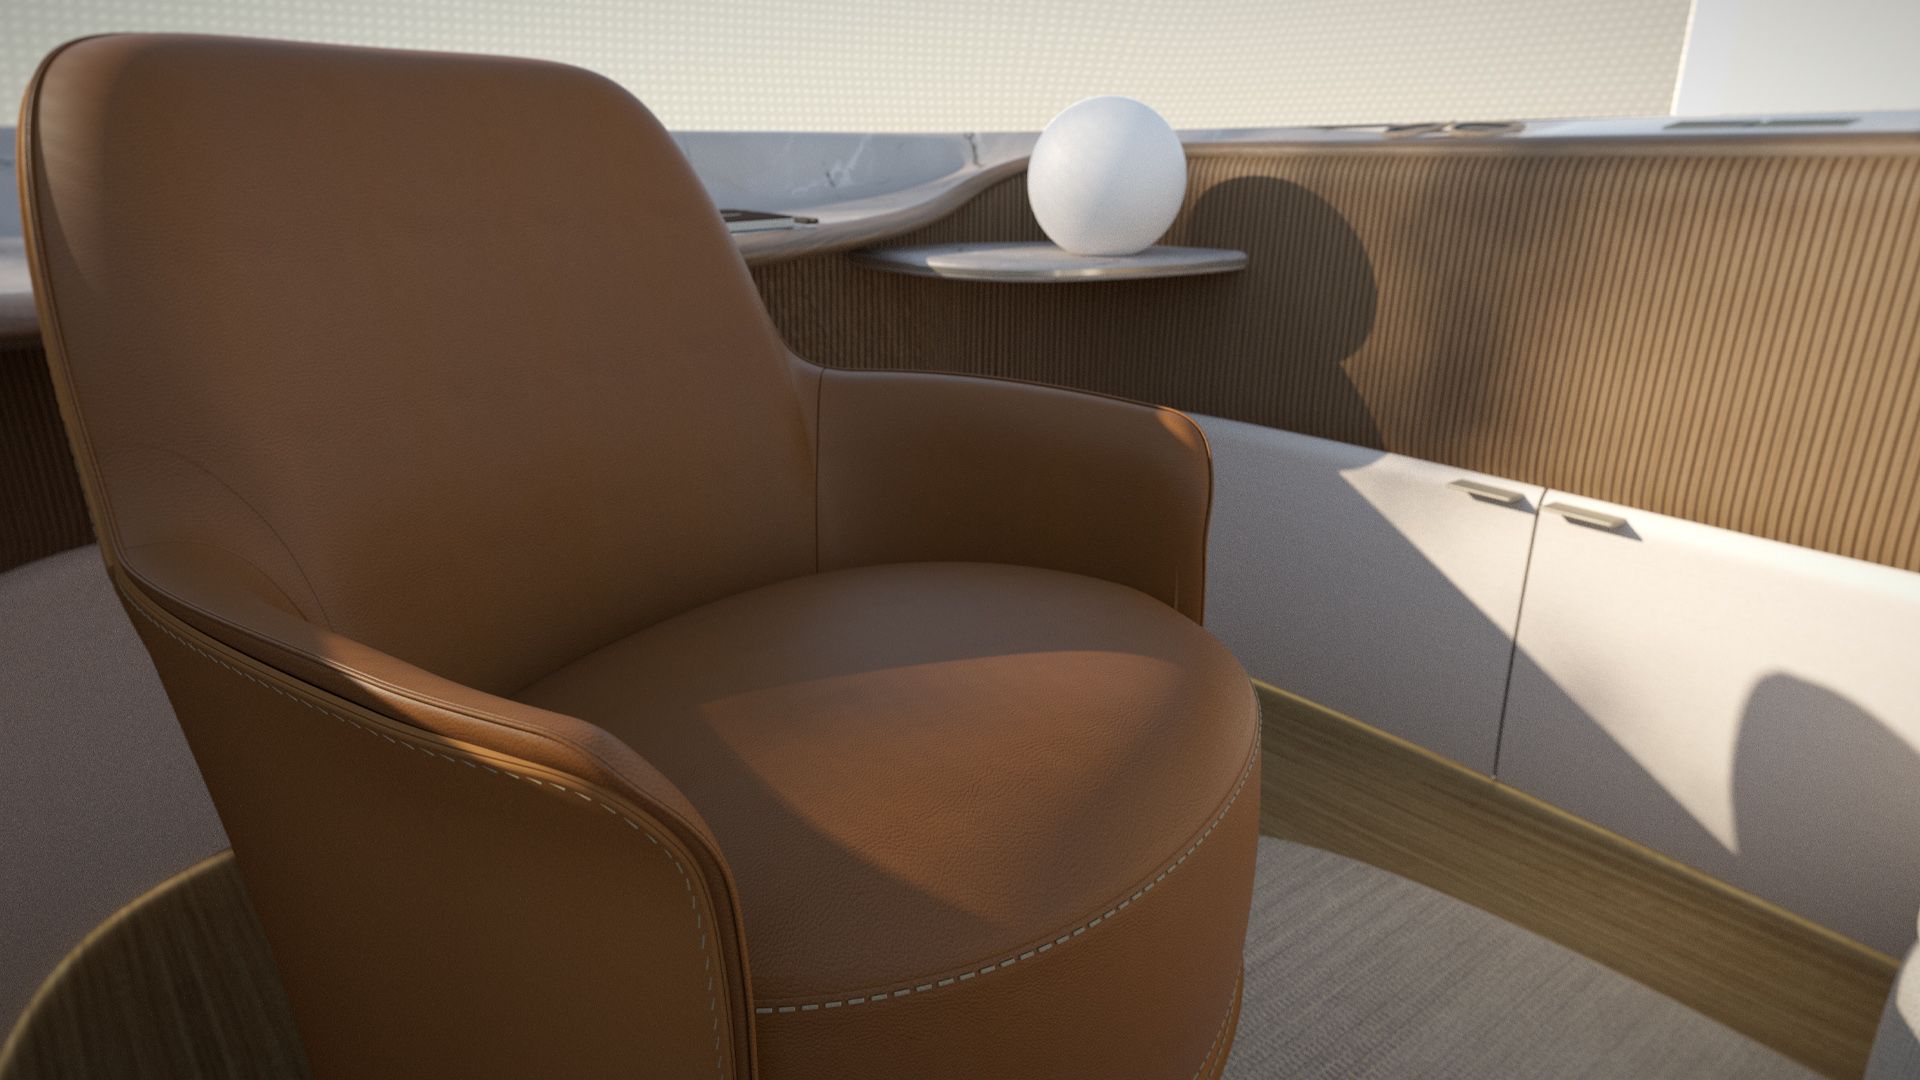 Het interieurontwerp van Poliform is voorzien van een bruine stoel.